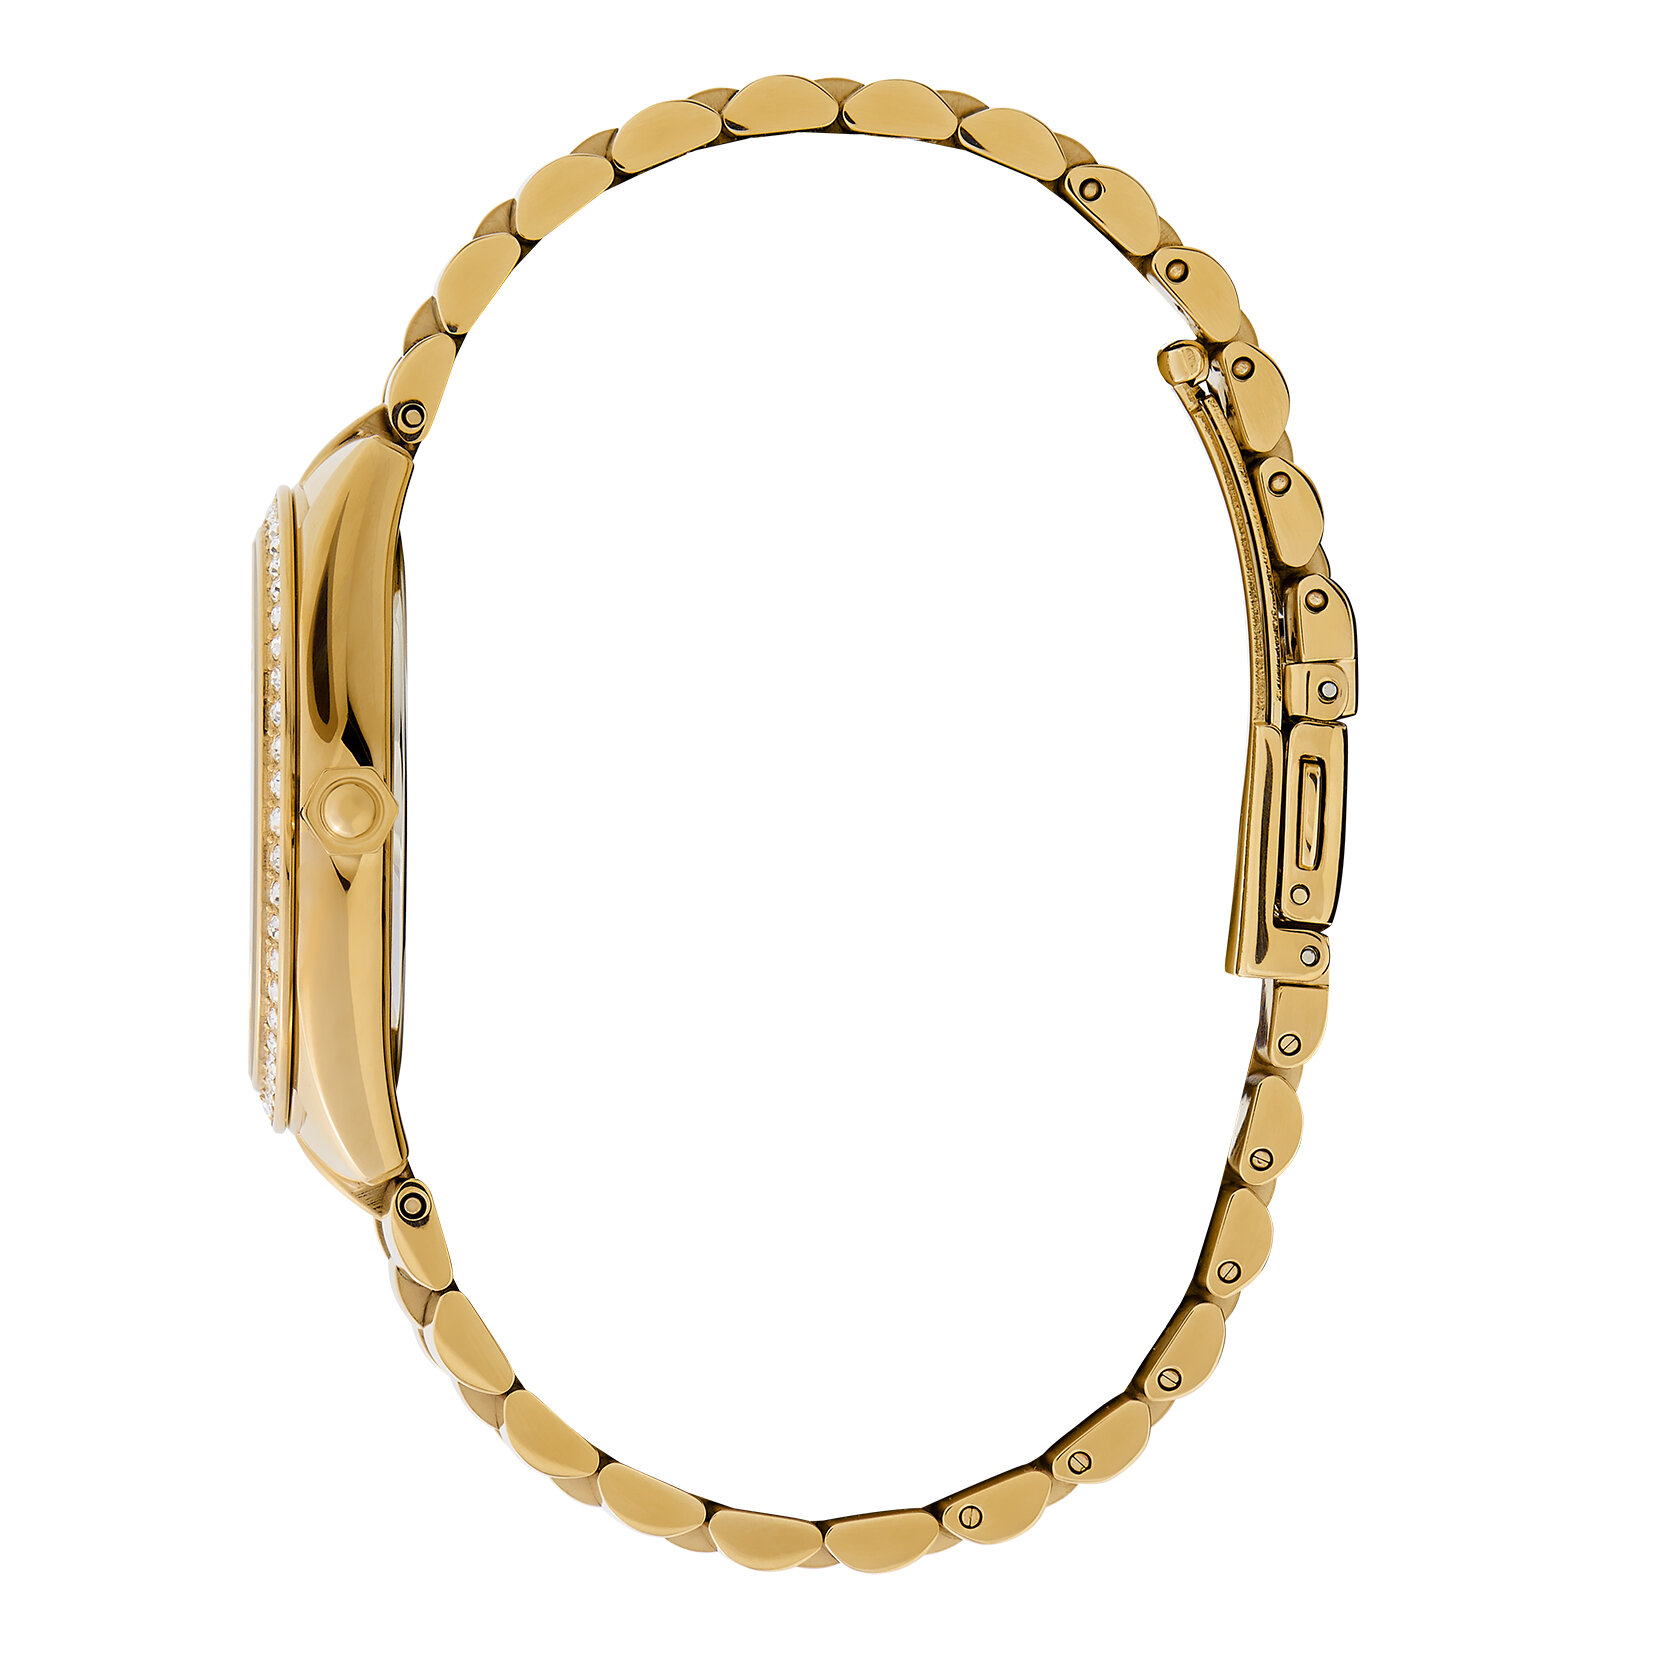 34mm Bejewelled Gold Bracelet Watch